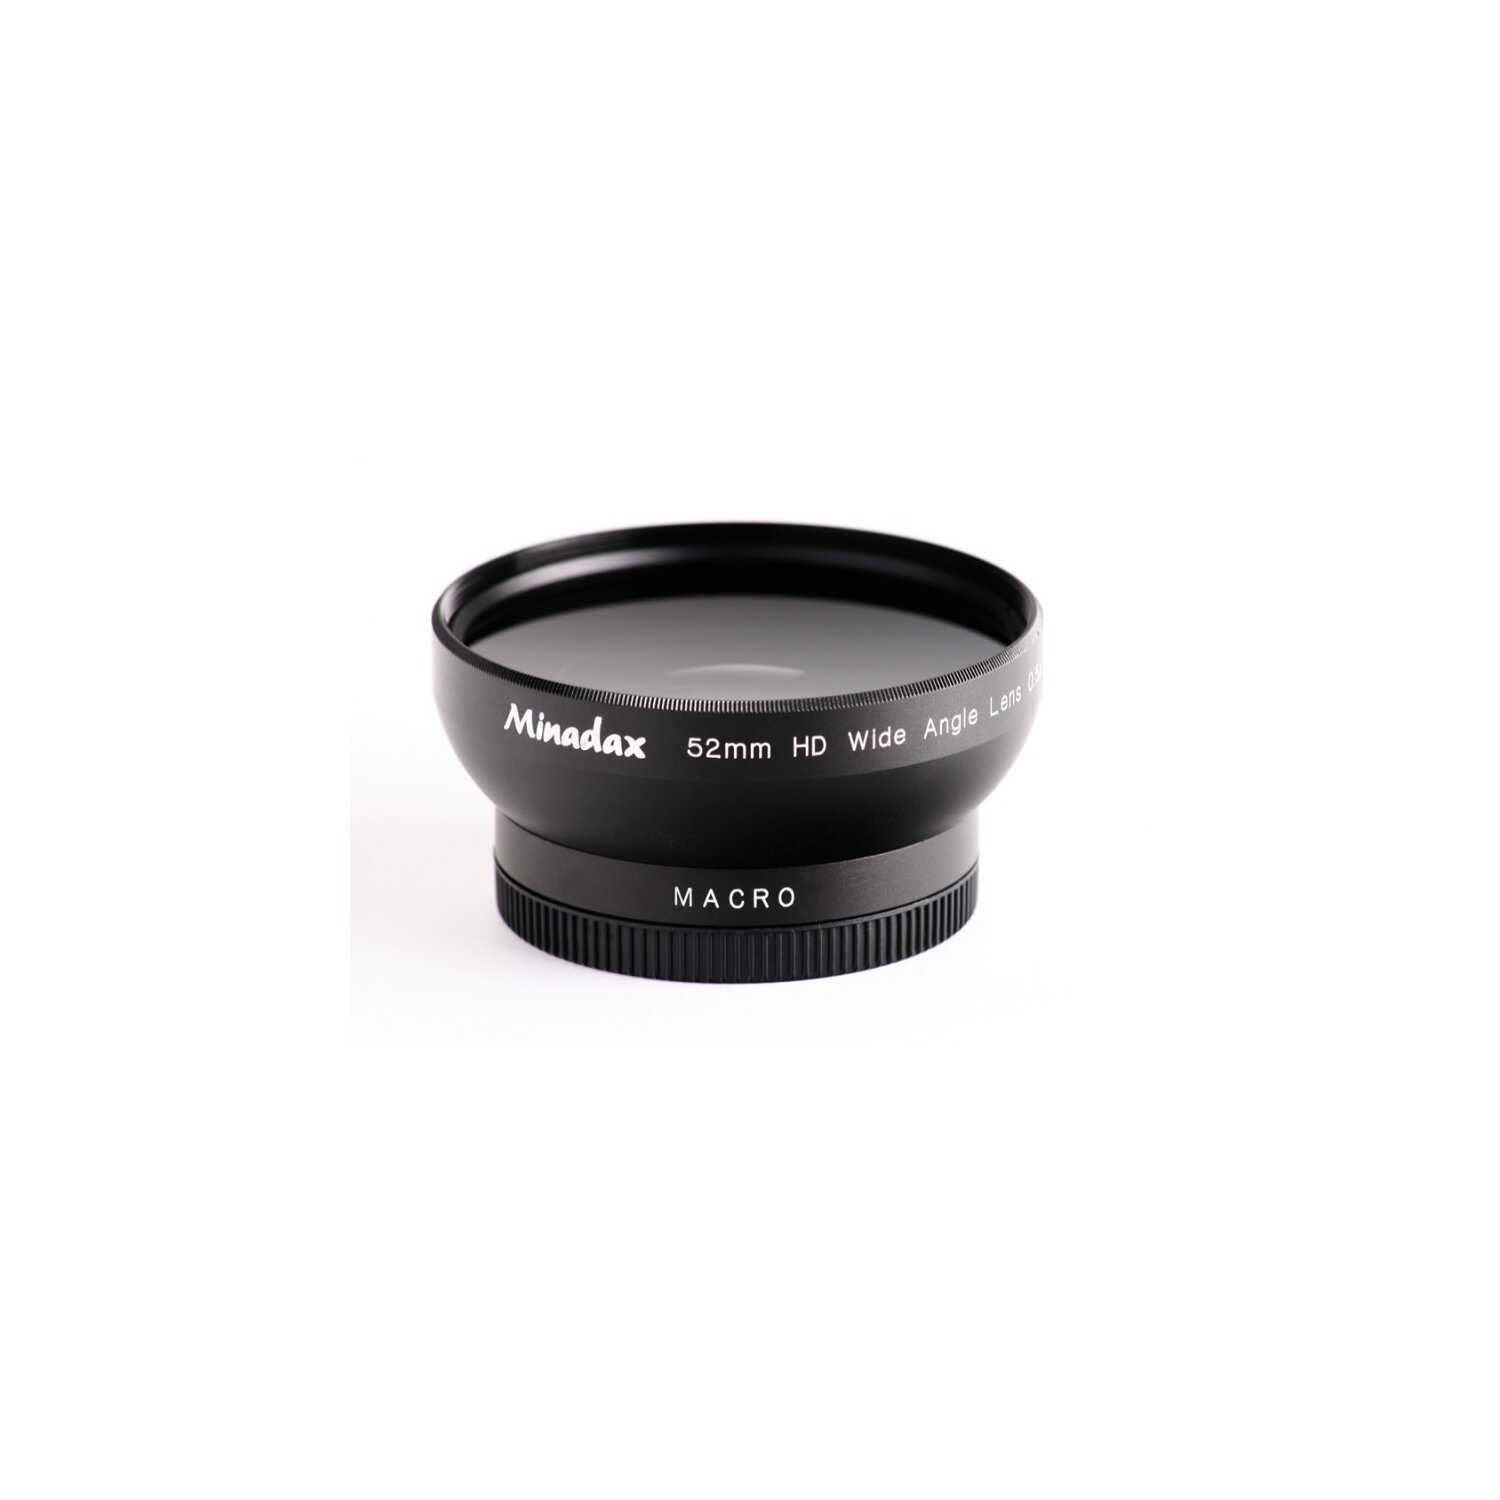 0.5x Minadax Weitwinkel Vorsatz mit Makrolinse kompatibel mit Nikon CoolPix 5000 und 5100 - in schwarz